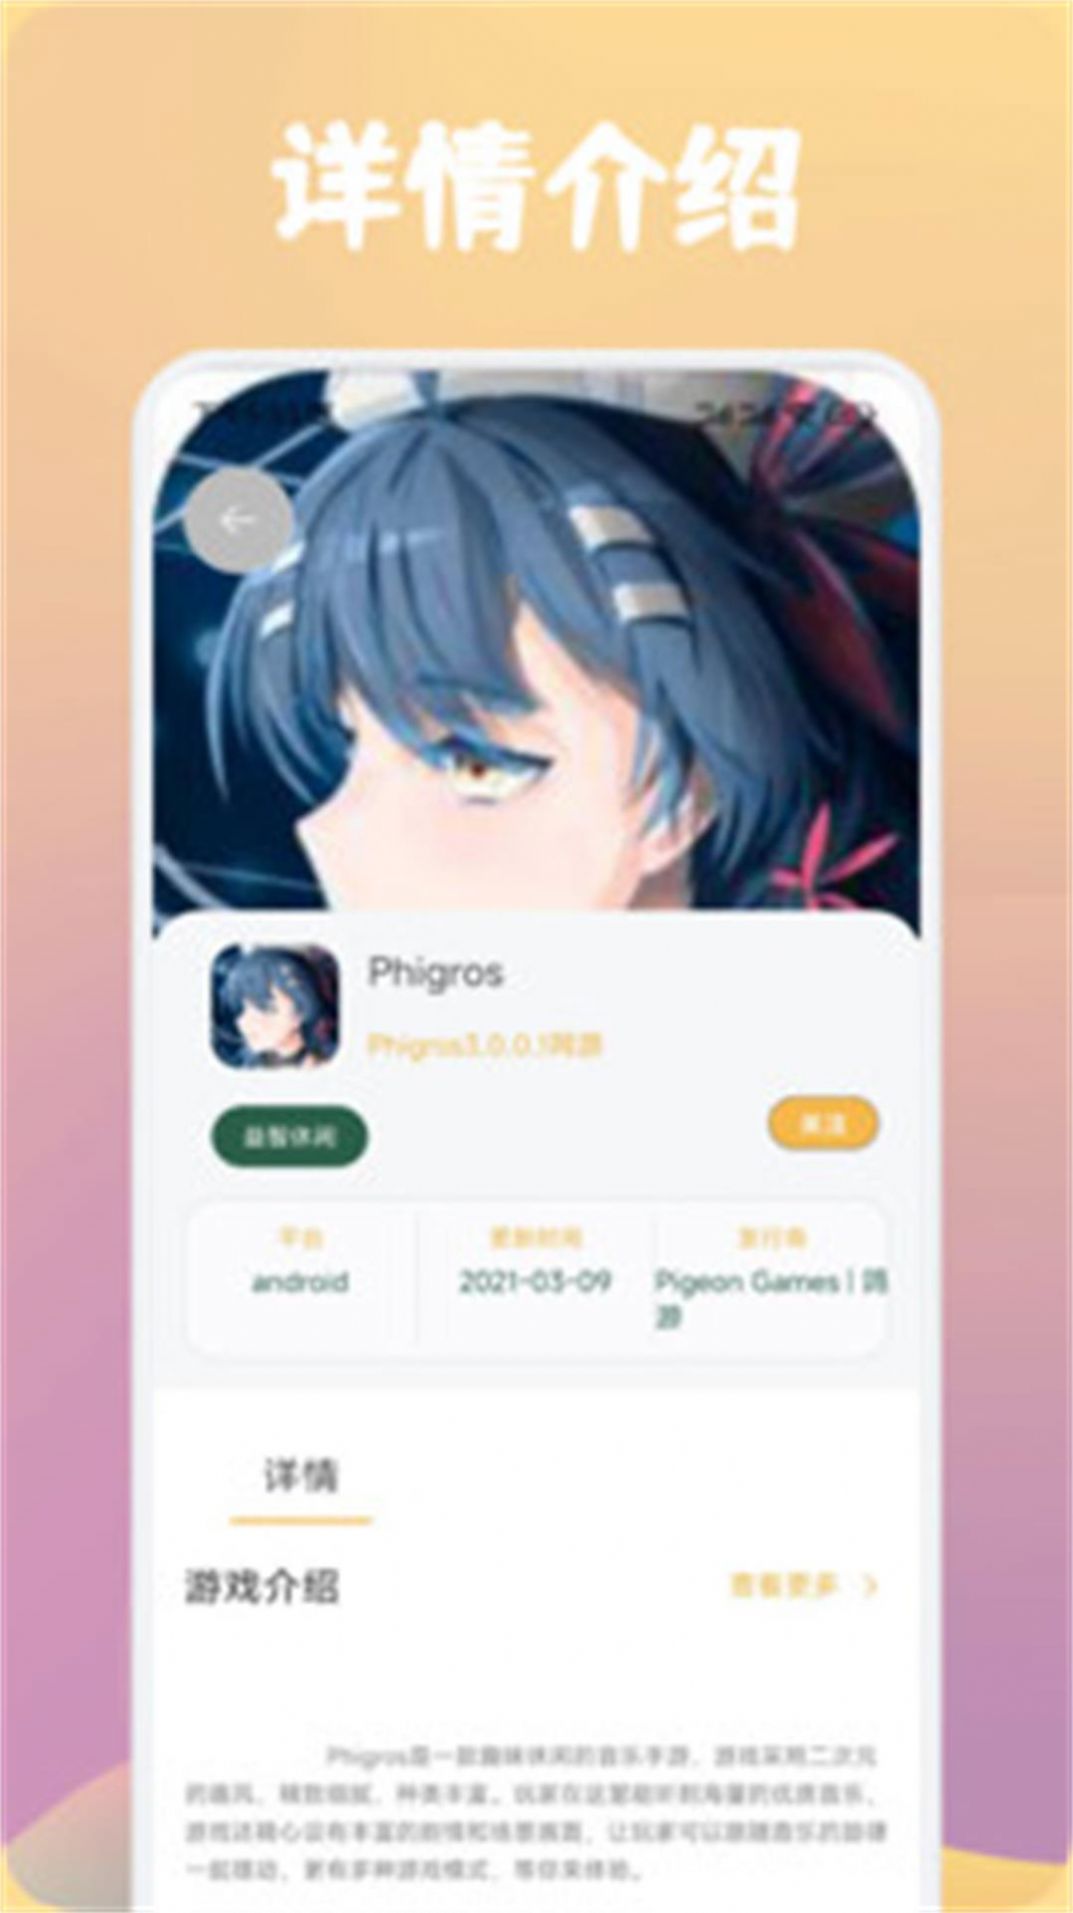 唔玩盒子助手app官方版图片1